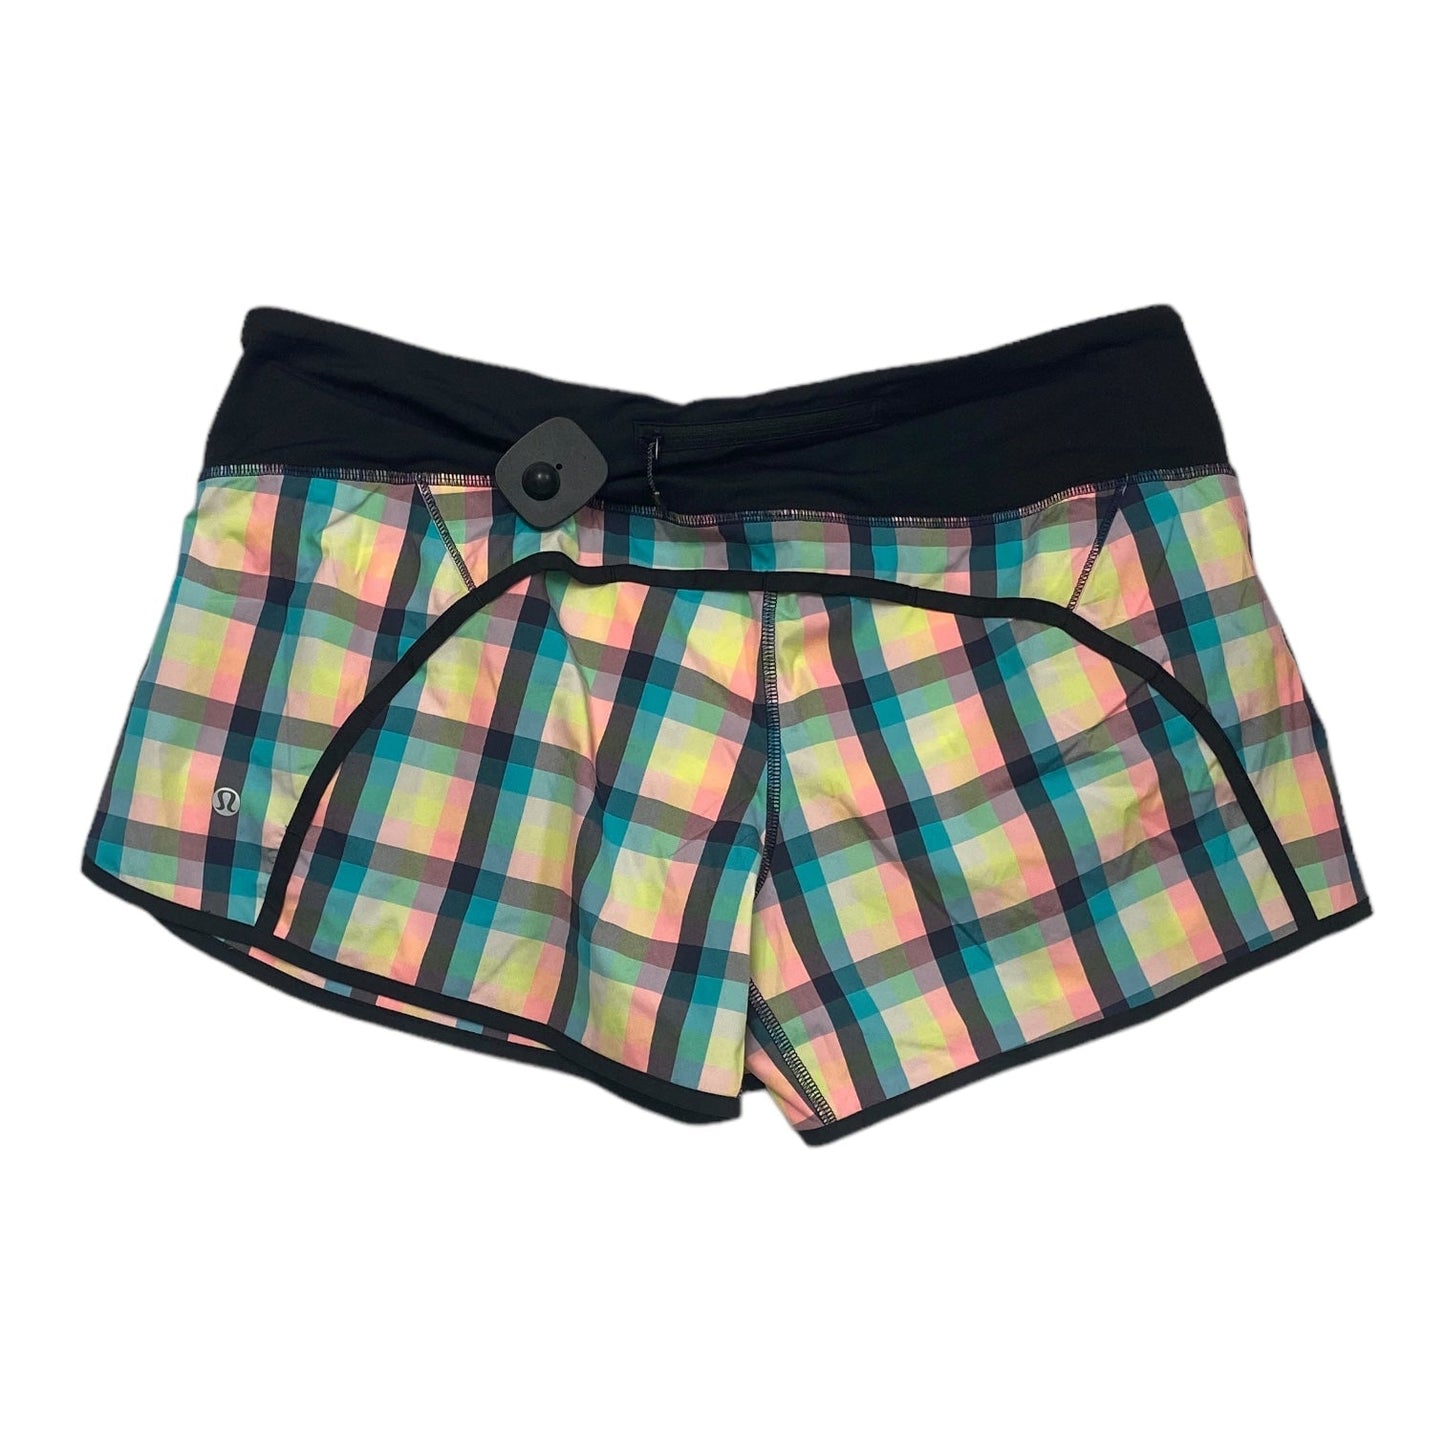 Plaid Pattern Athletic Shorts Lululemon, Size 12